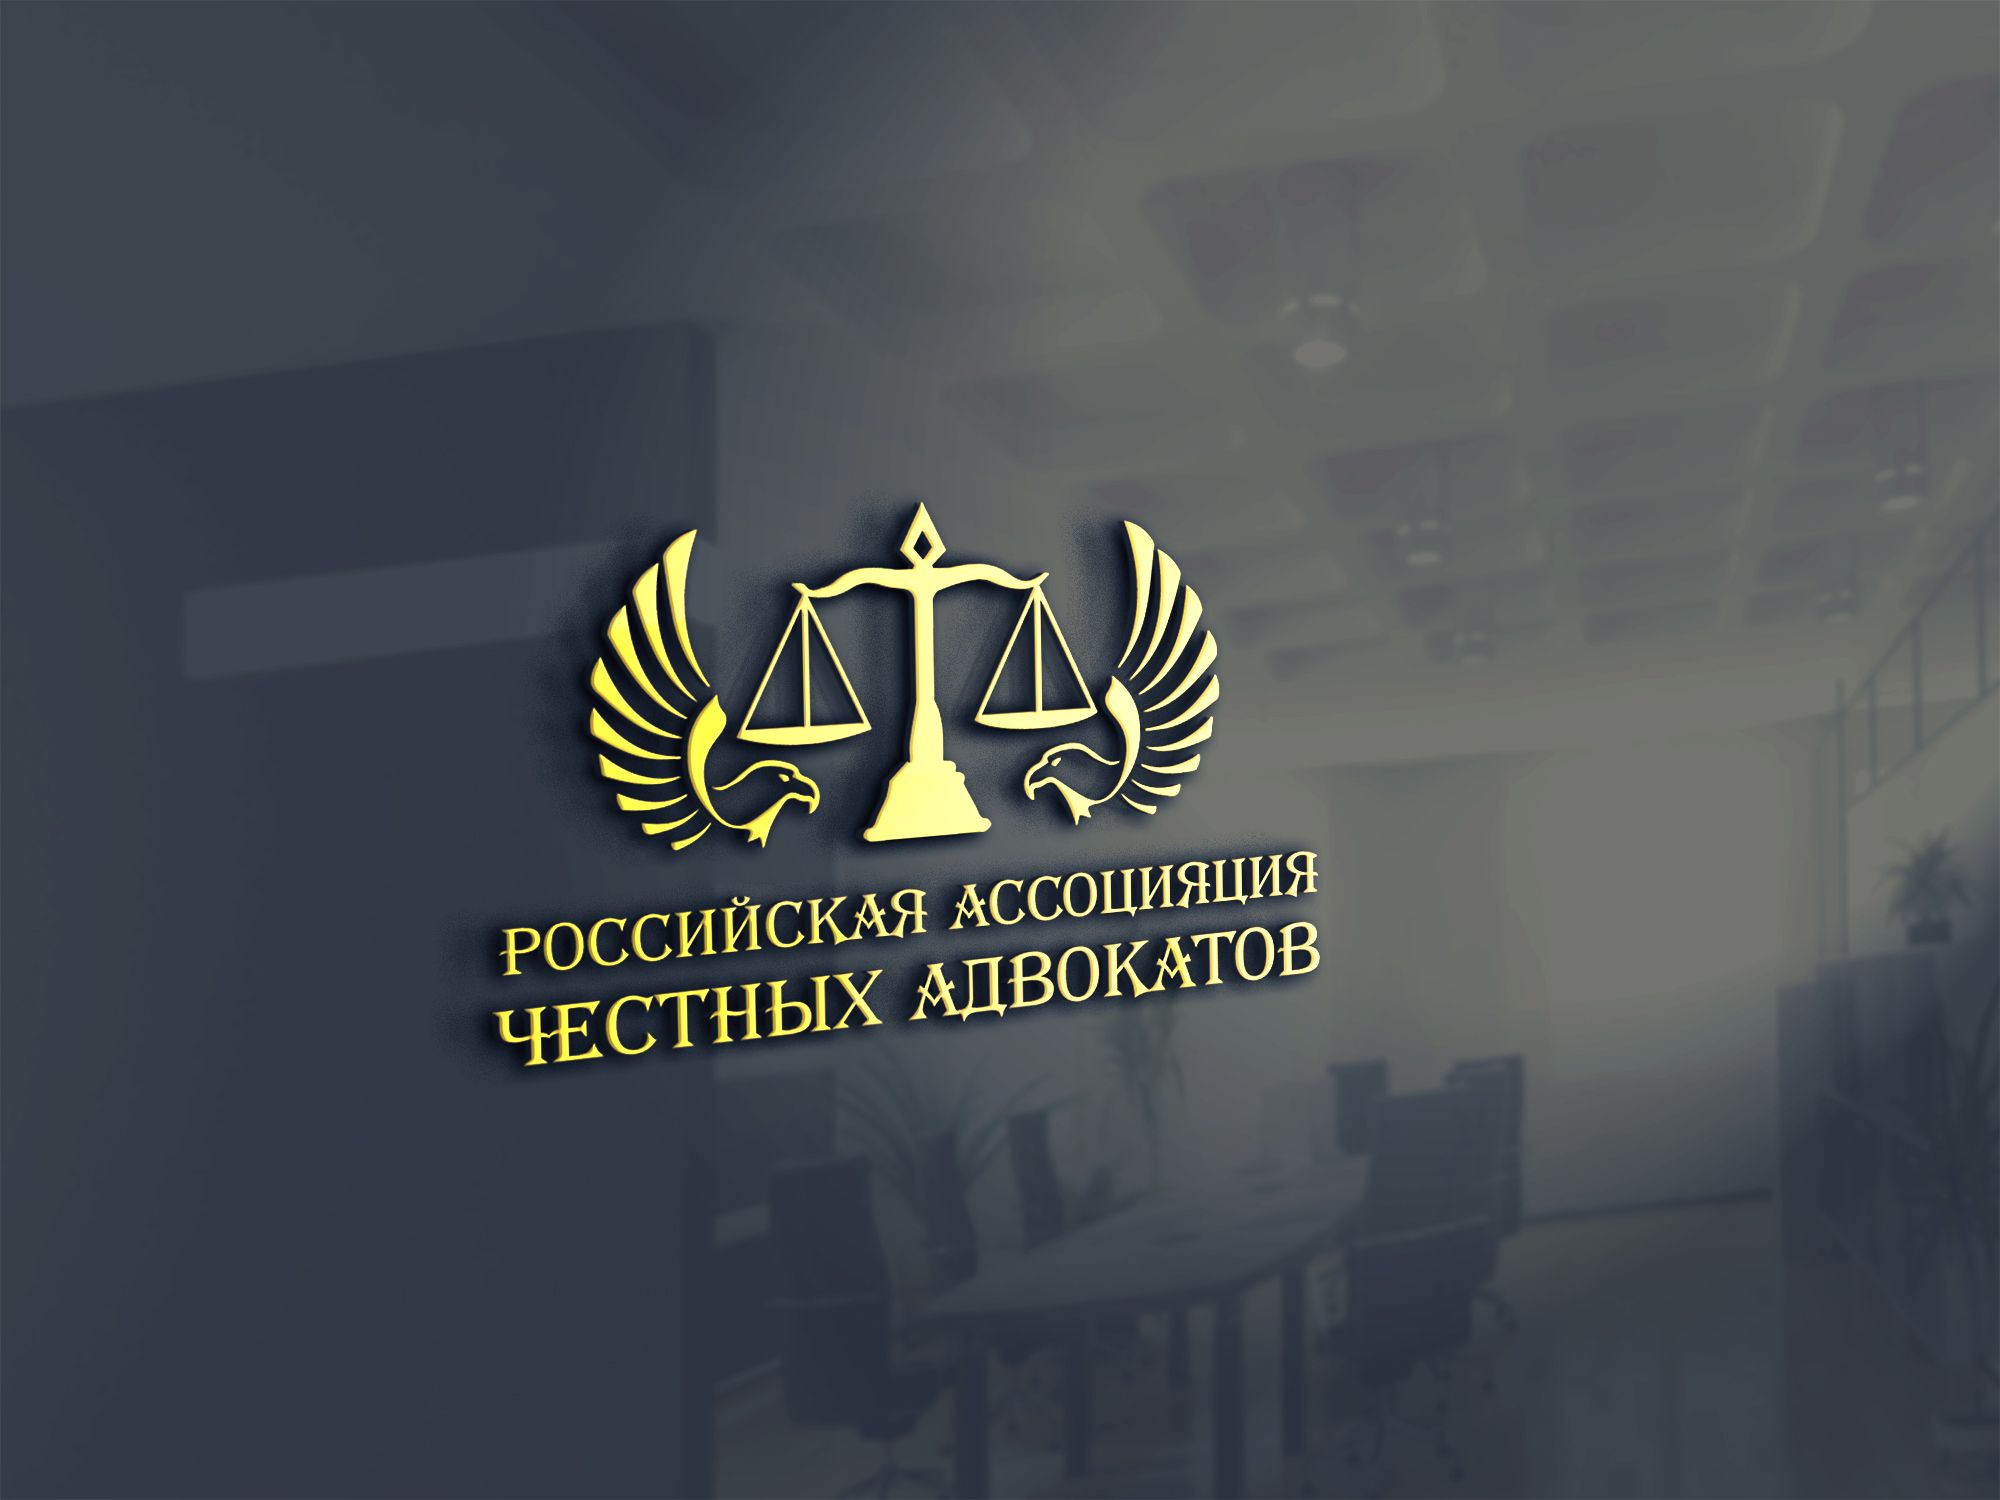 Логотип для Российская ассоциация честных адвокатов - дизайнер SmolinDenis